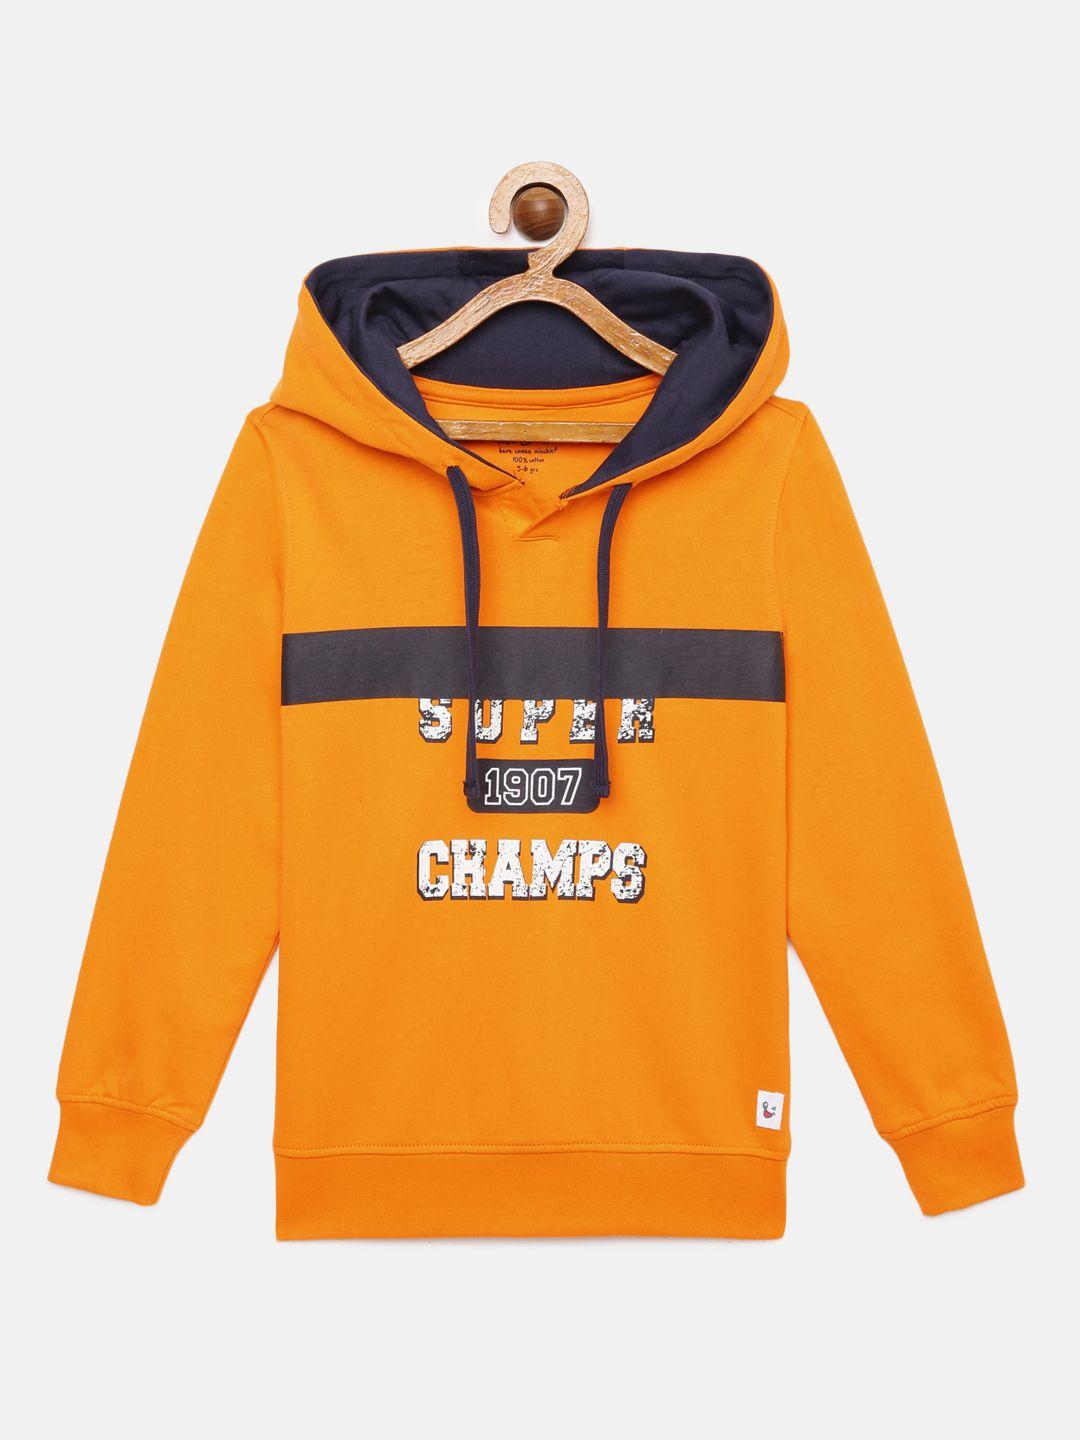 miss & chief boys orange printed hooded sweatshirt